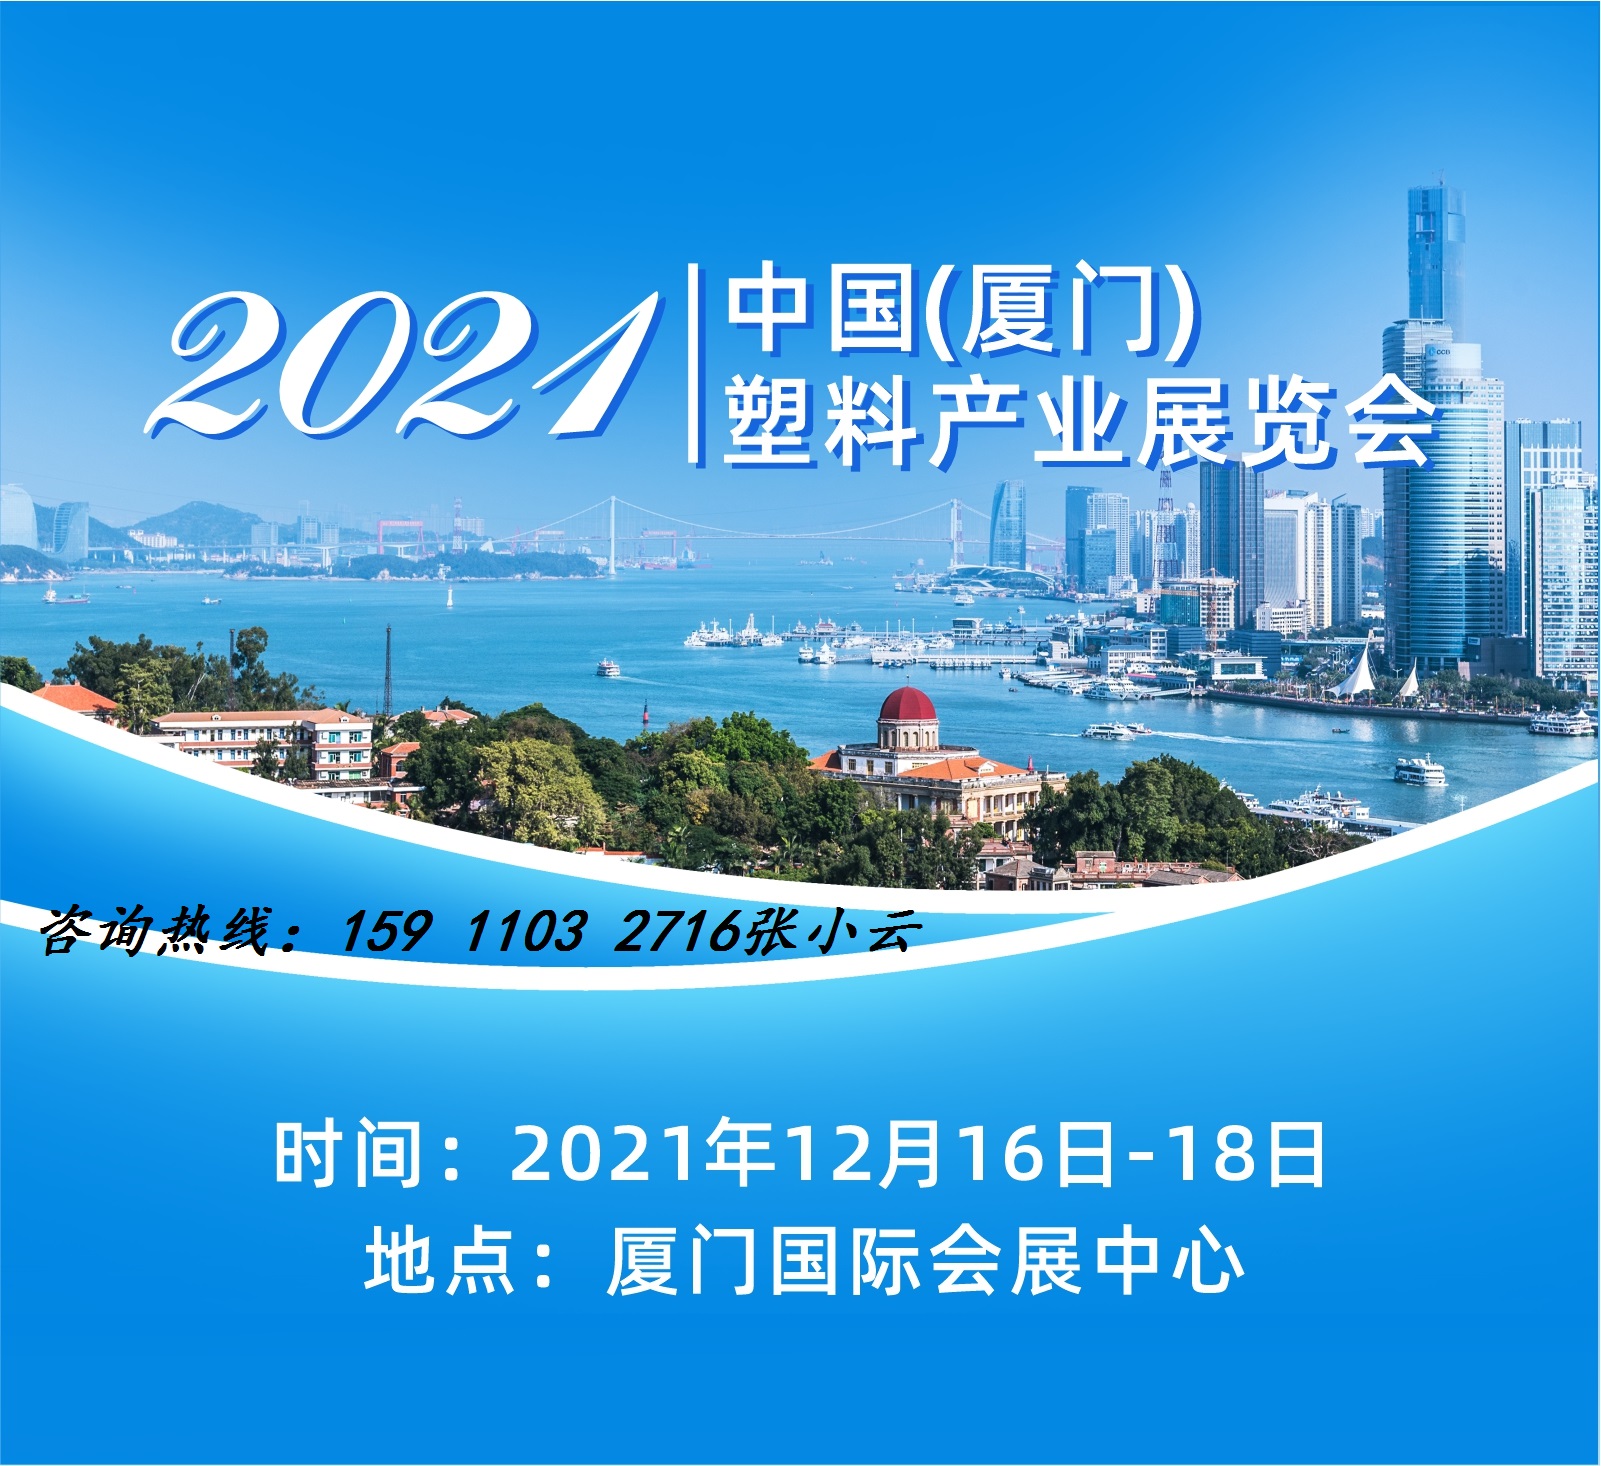 2021中国(厦门)塑料产业展览会